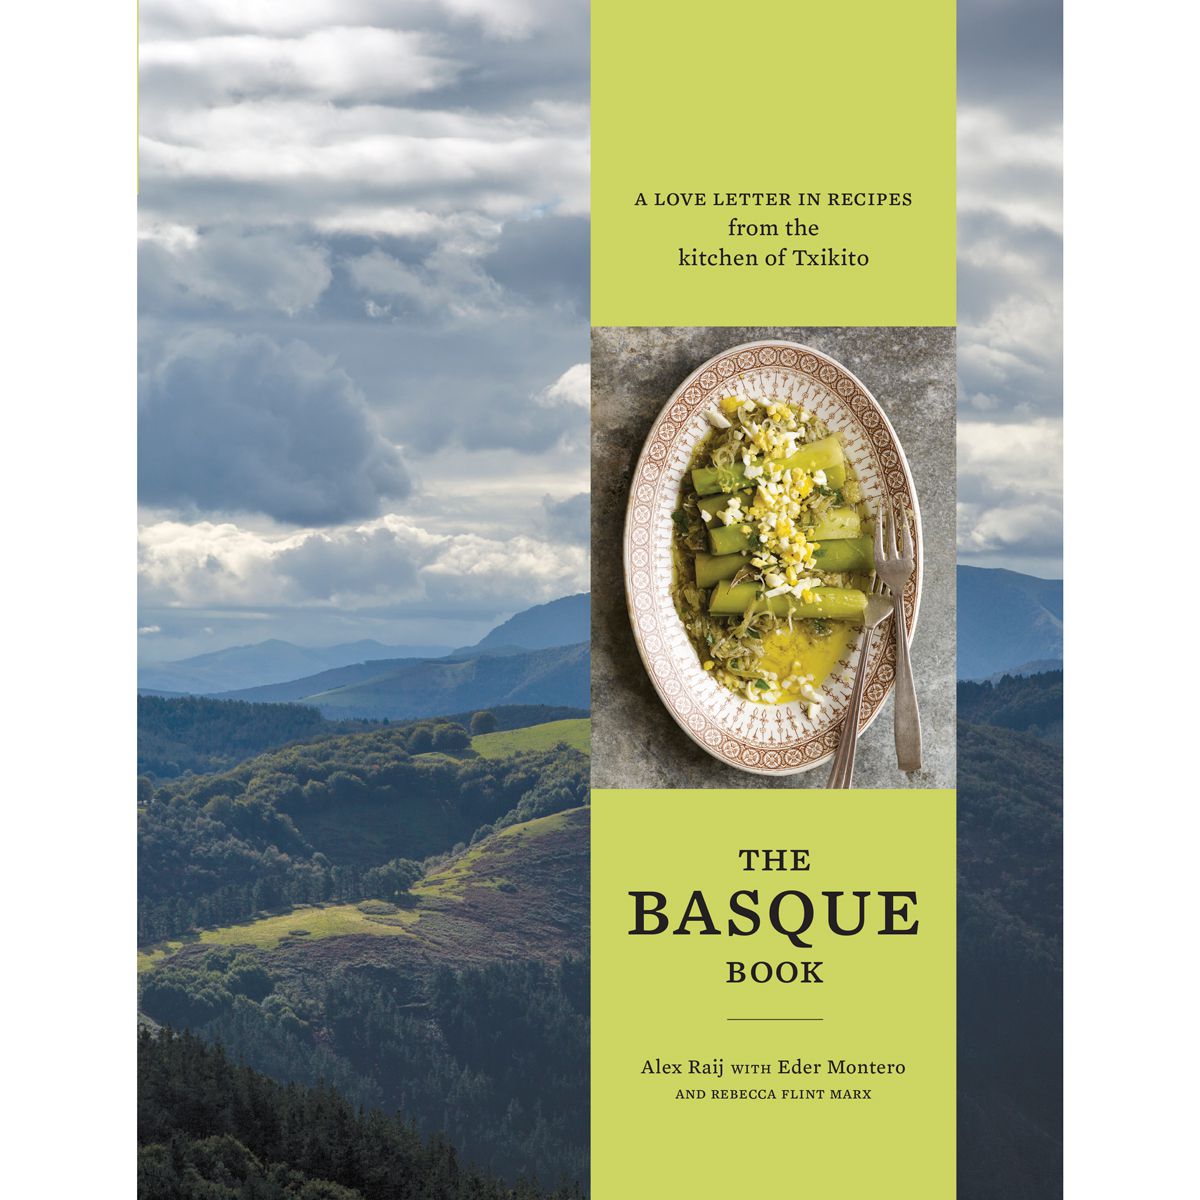 The Basque Book by Alex Raij